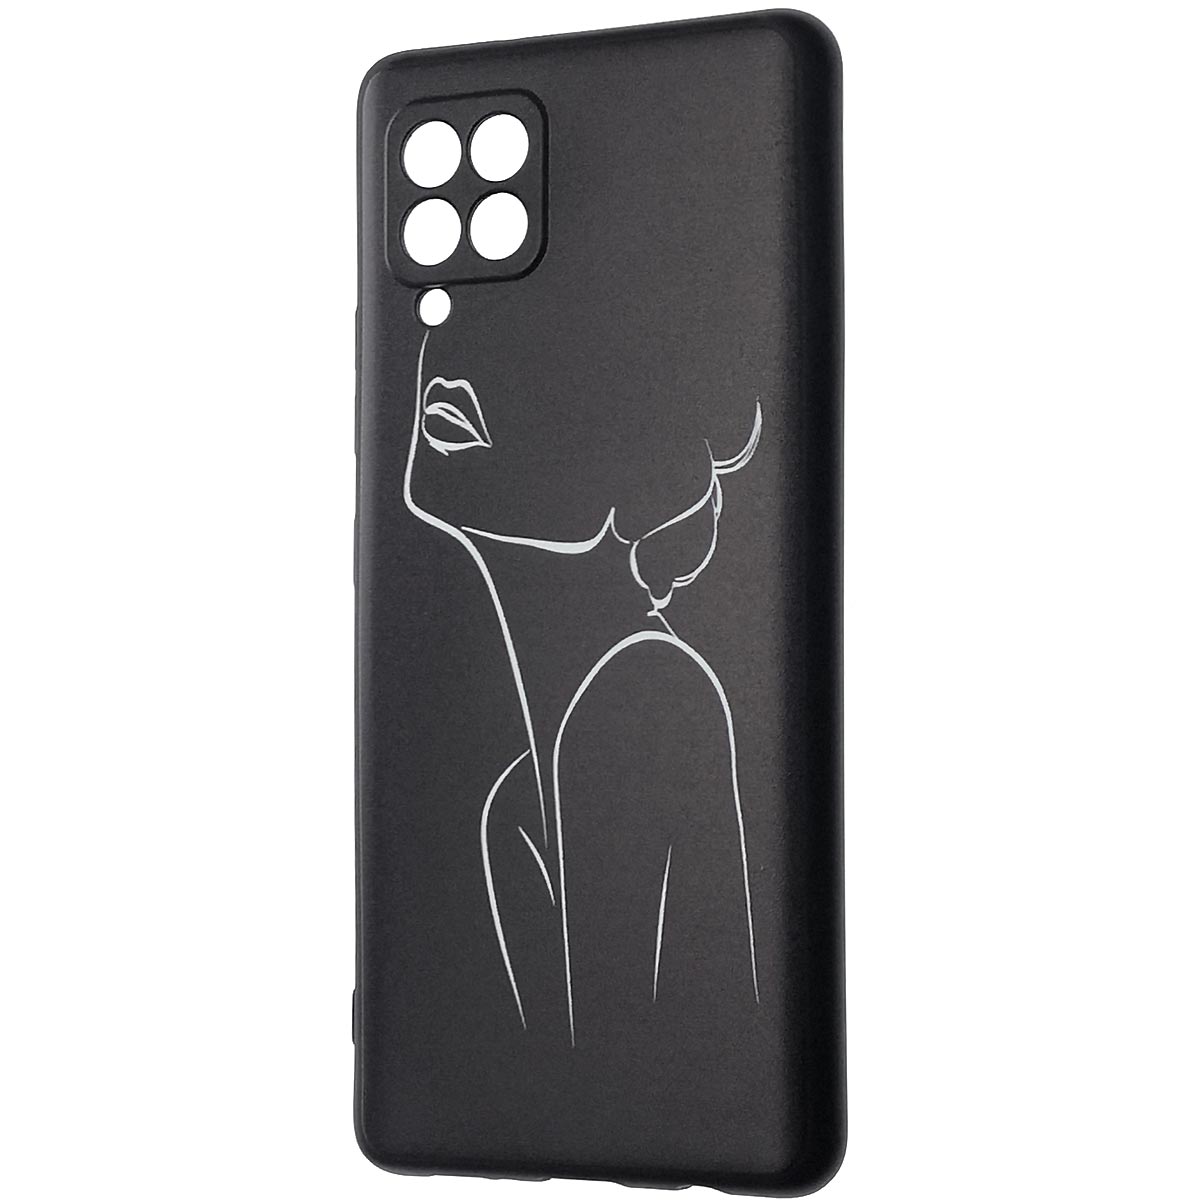 Чехол накладка для SAMSUNG Galaxy A12 (SM-A125), силикон, рисунок женский силуэт